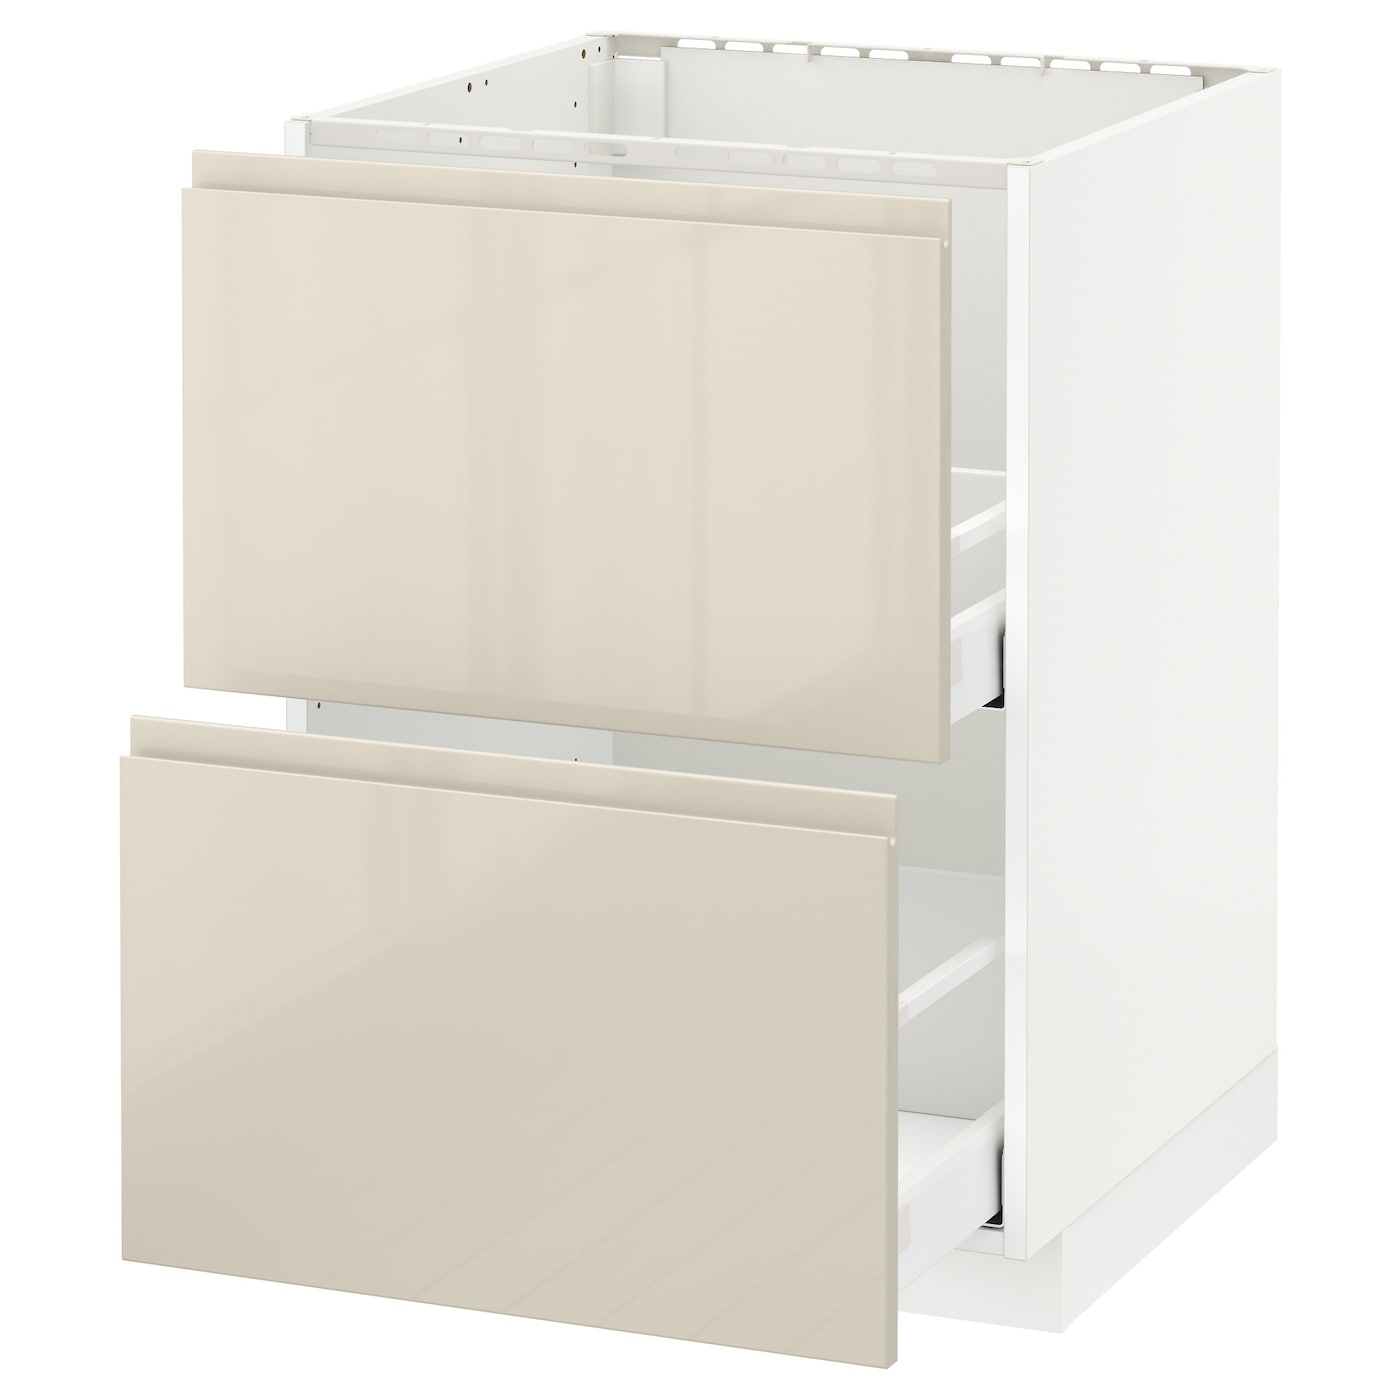 Напольный шкаф  - IKEA METOD MAXIMERA, 88x62x60см, белый/бежевый, МЕТОД МАКСИМЕРА ИКЕА